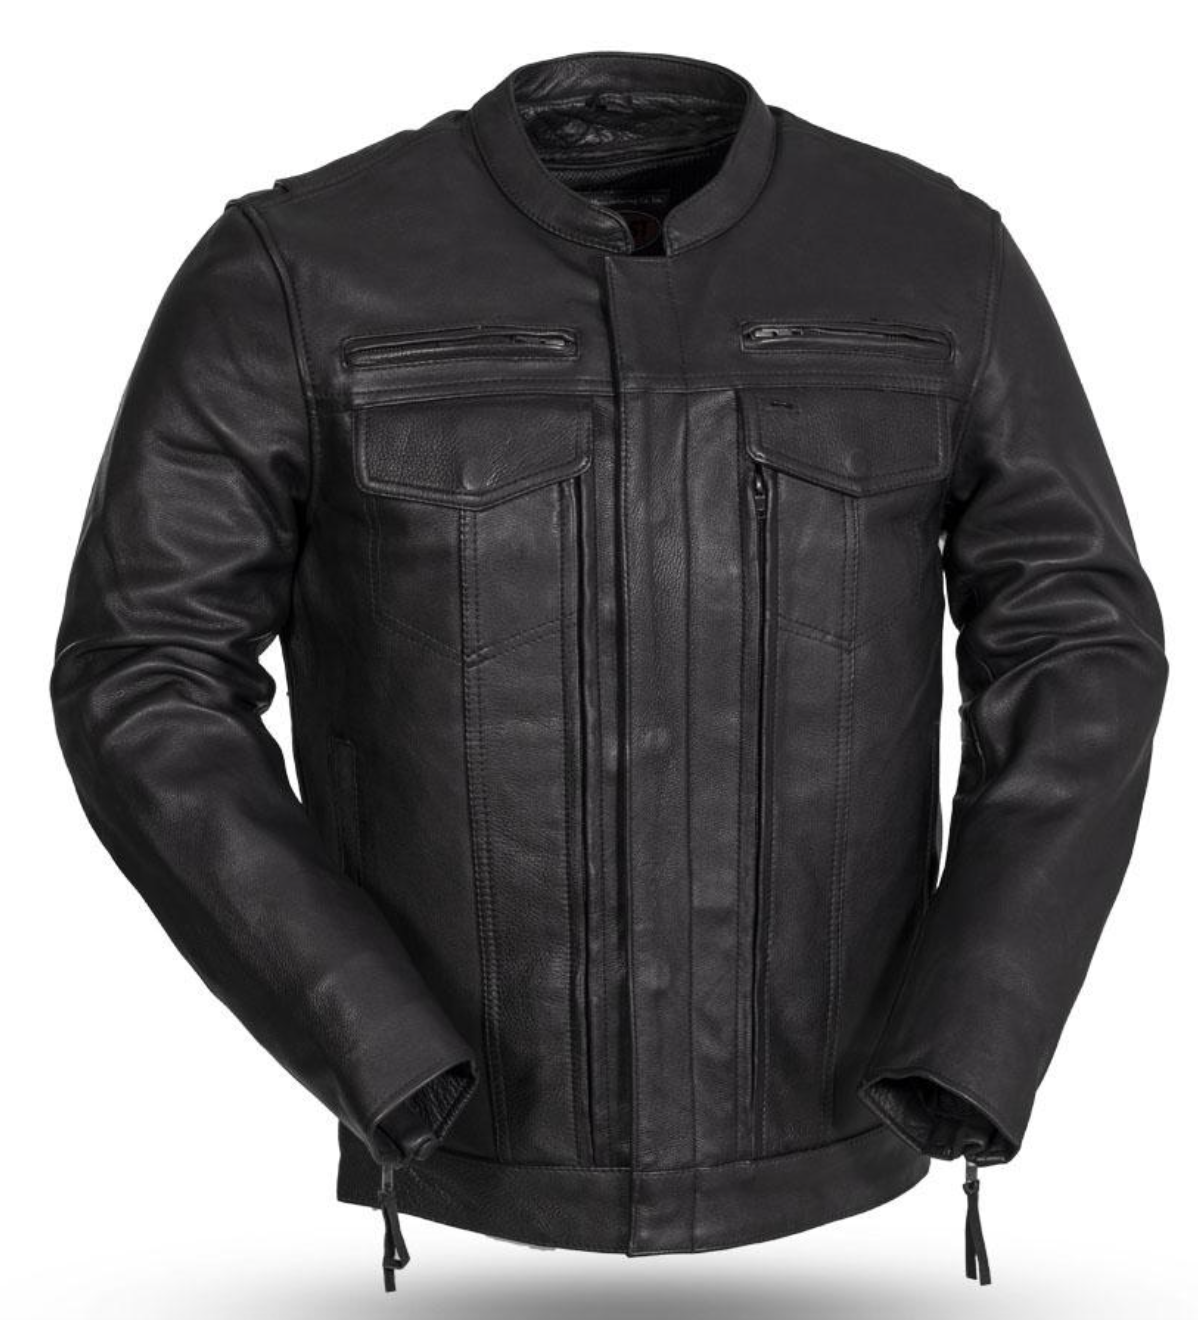 Raider Motorcycle Leather Jacket - Black